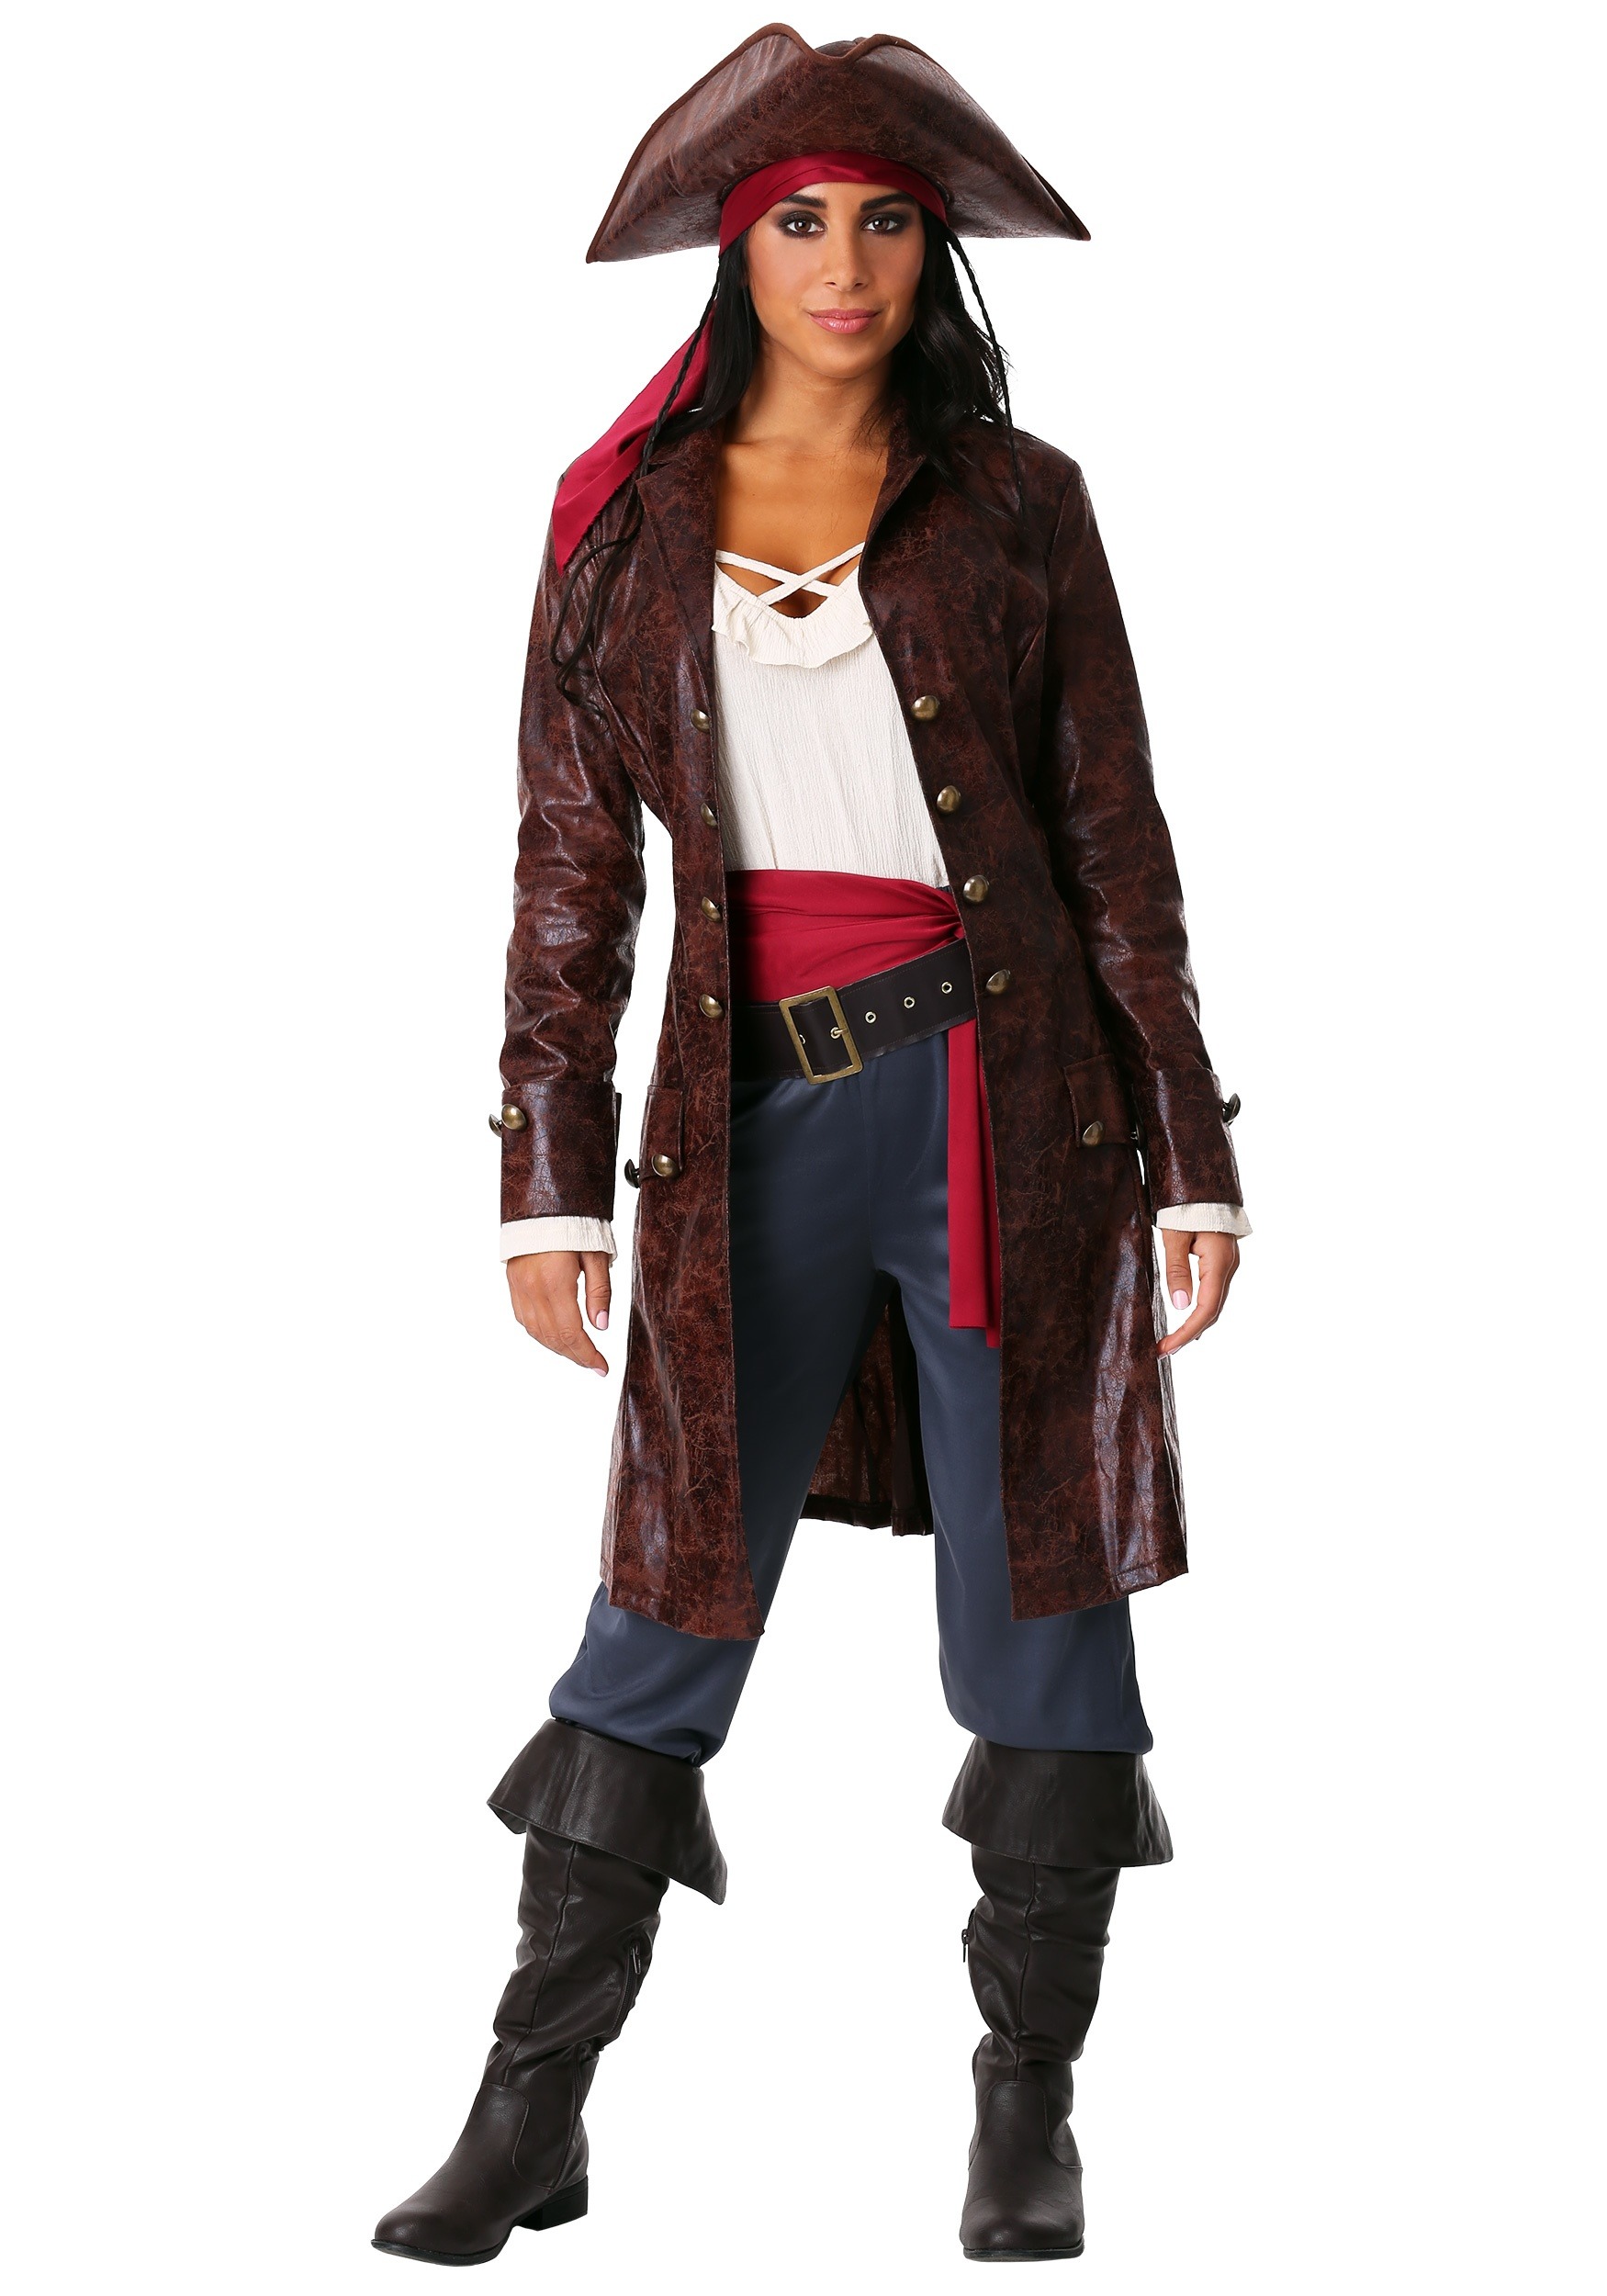 Image of Pretty Pirate Captain Costume for Women ID FUN0391AD-L